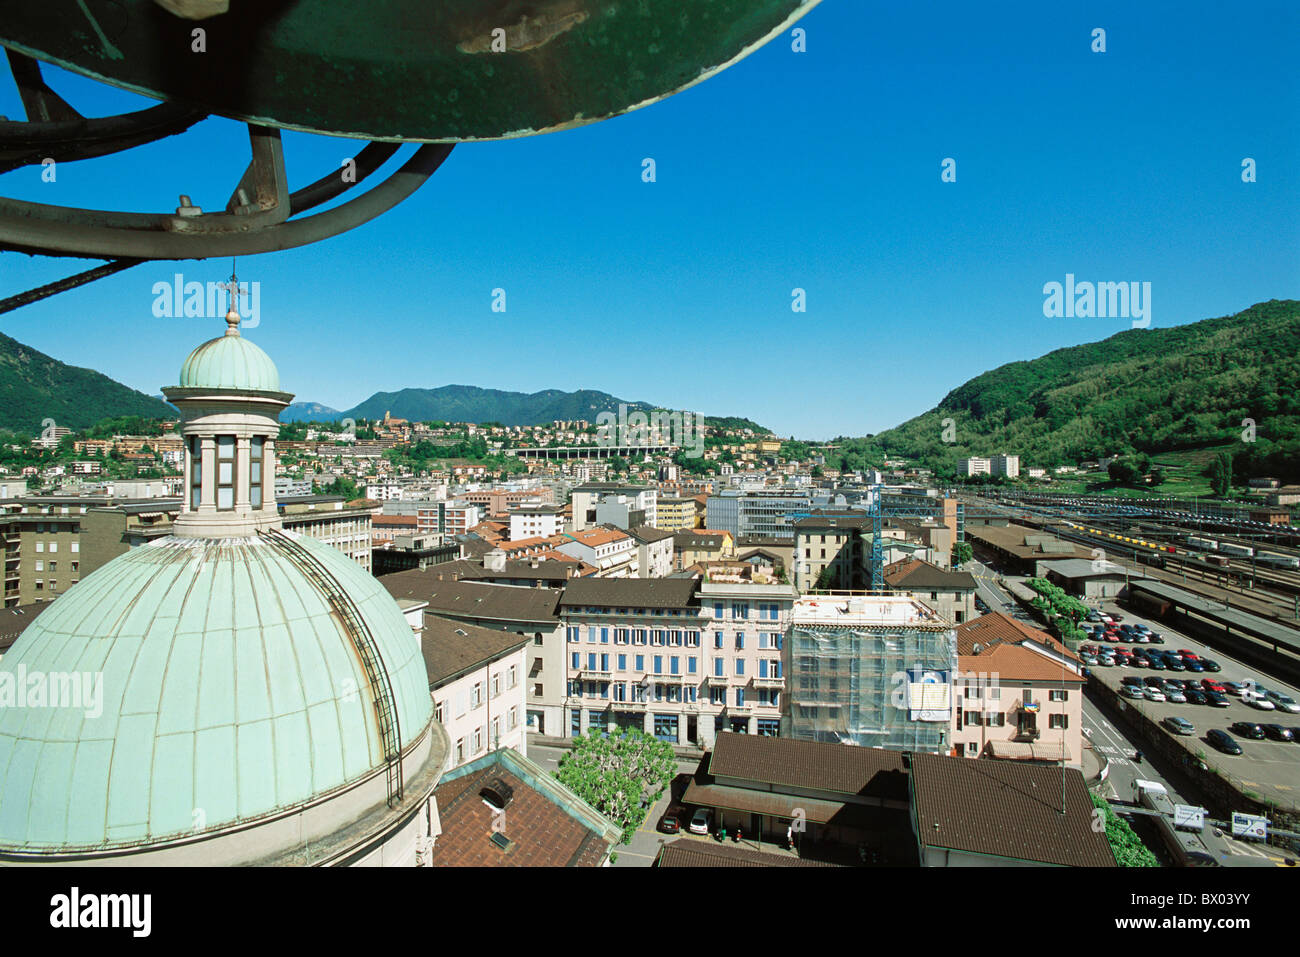 Stazione ferroviaria di Chiasso cantone i tetti a cupola Ticino Svizzera Europa città panoramica della città Foto Stock